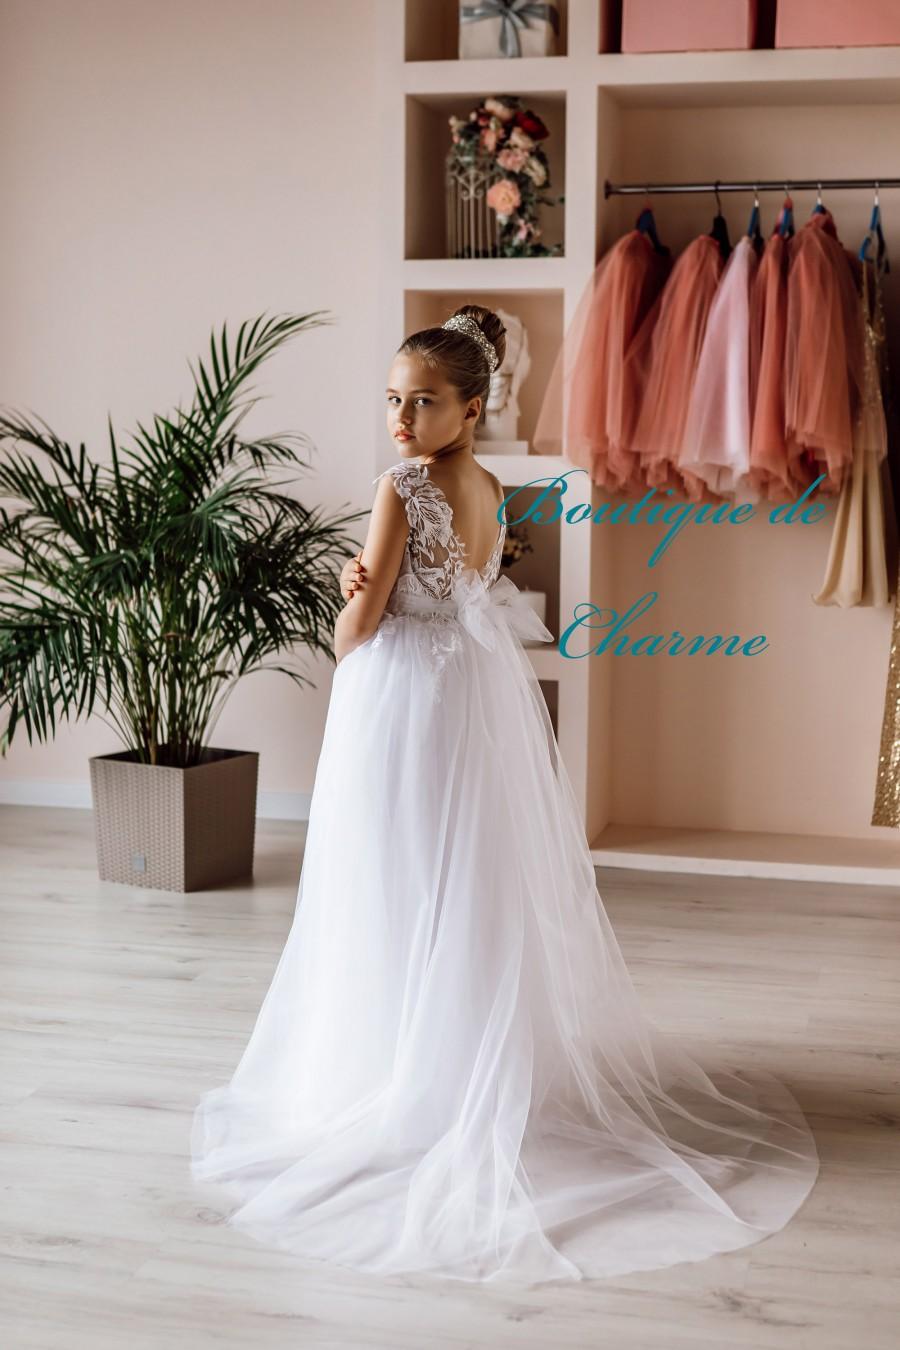 Mariage - Flower girl dress train, Tulle flower girl dress,Elegant flower girl dress,Lace girl dress,Long girl dress,Toddler wedding dress,White dress